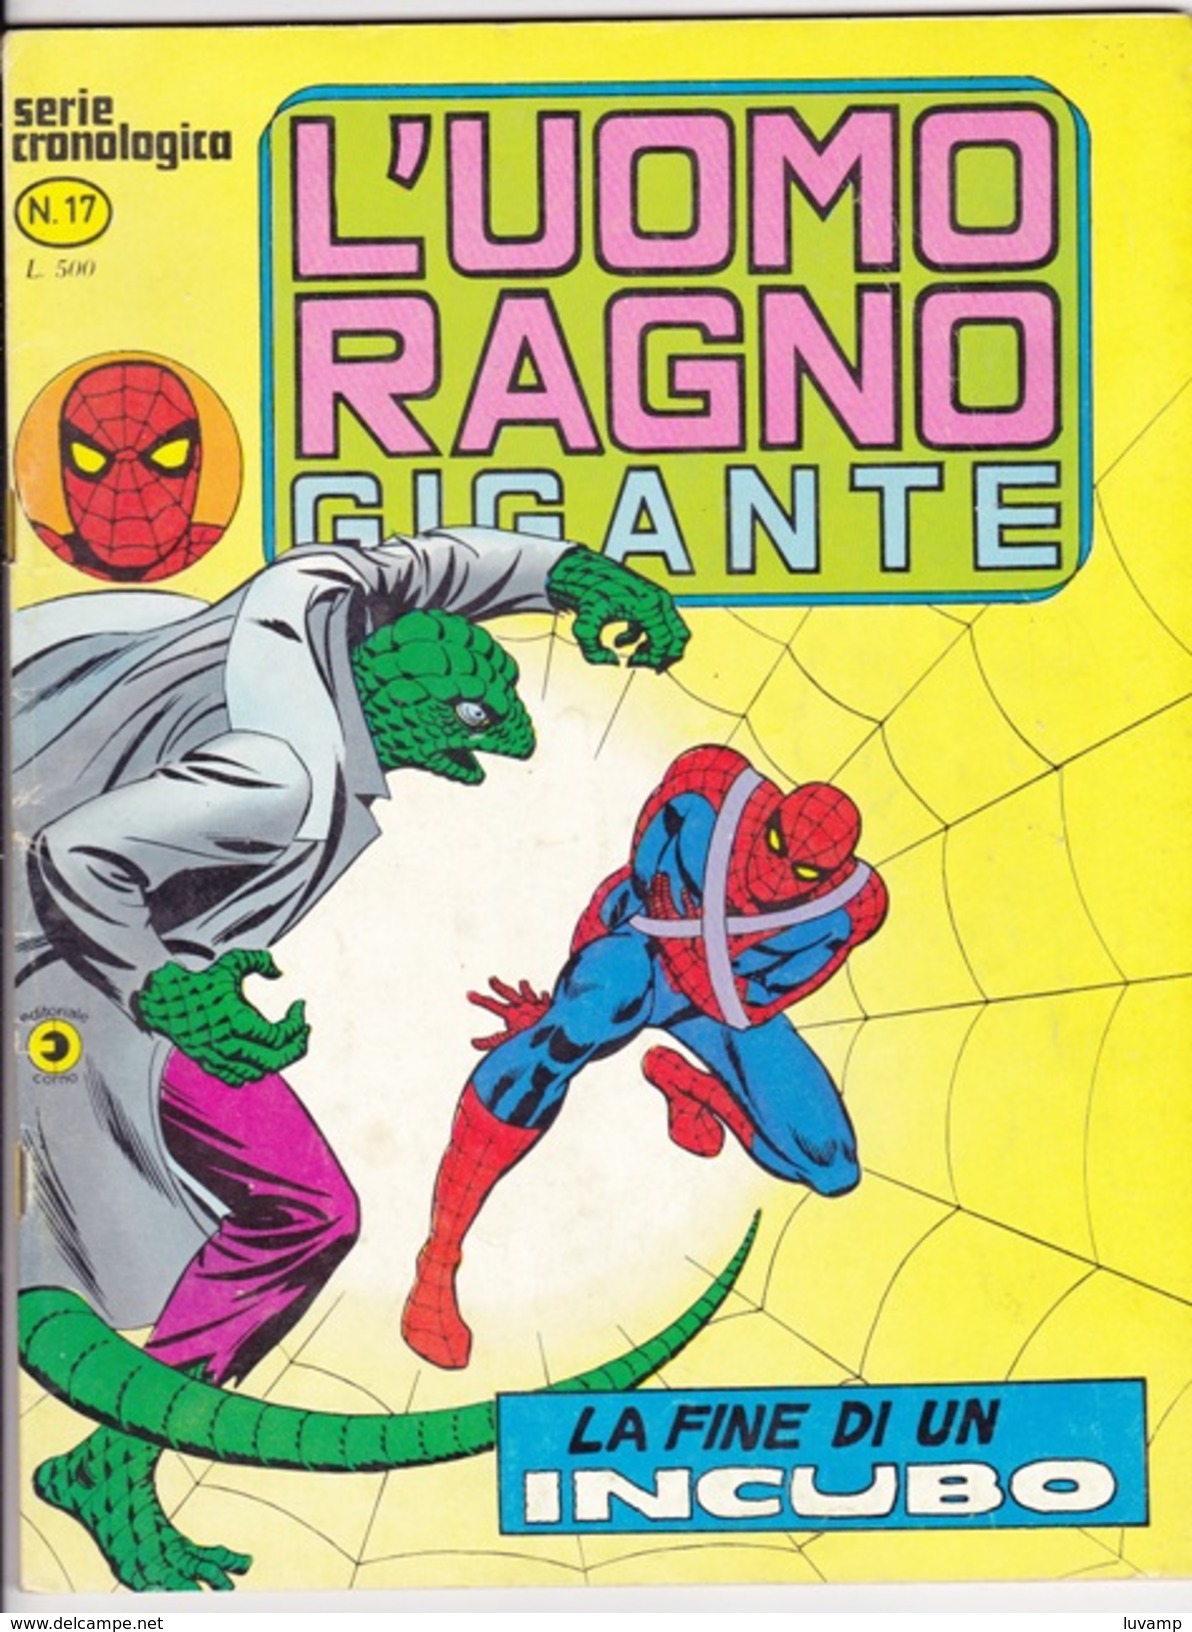 L'UOMO RAGNO GIGANTE -Serie Cronologica - Editore CORNO -N. 17 (240912) - Spider Man